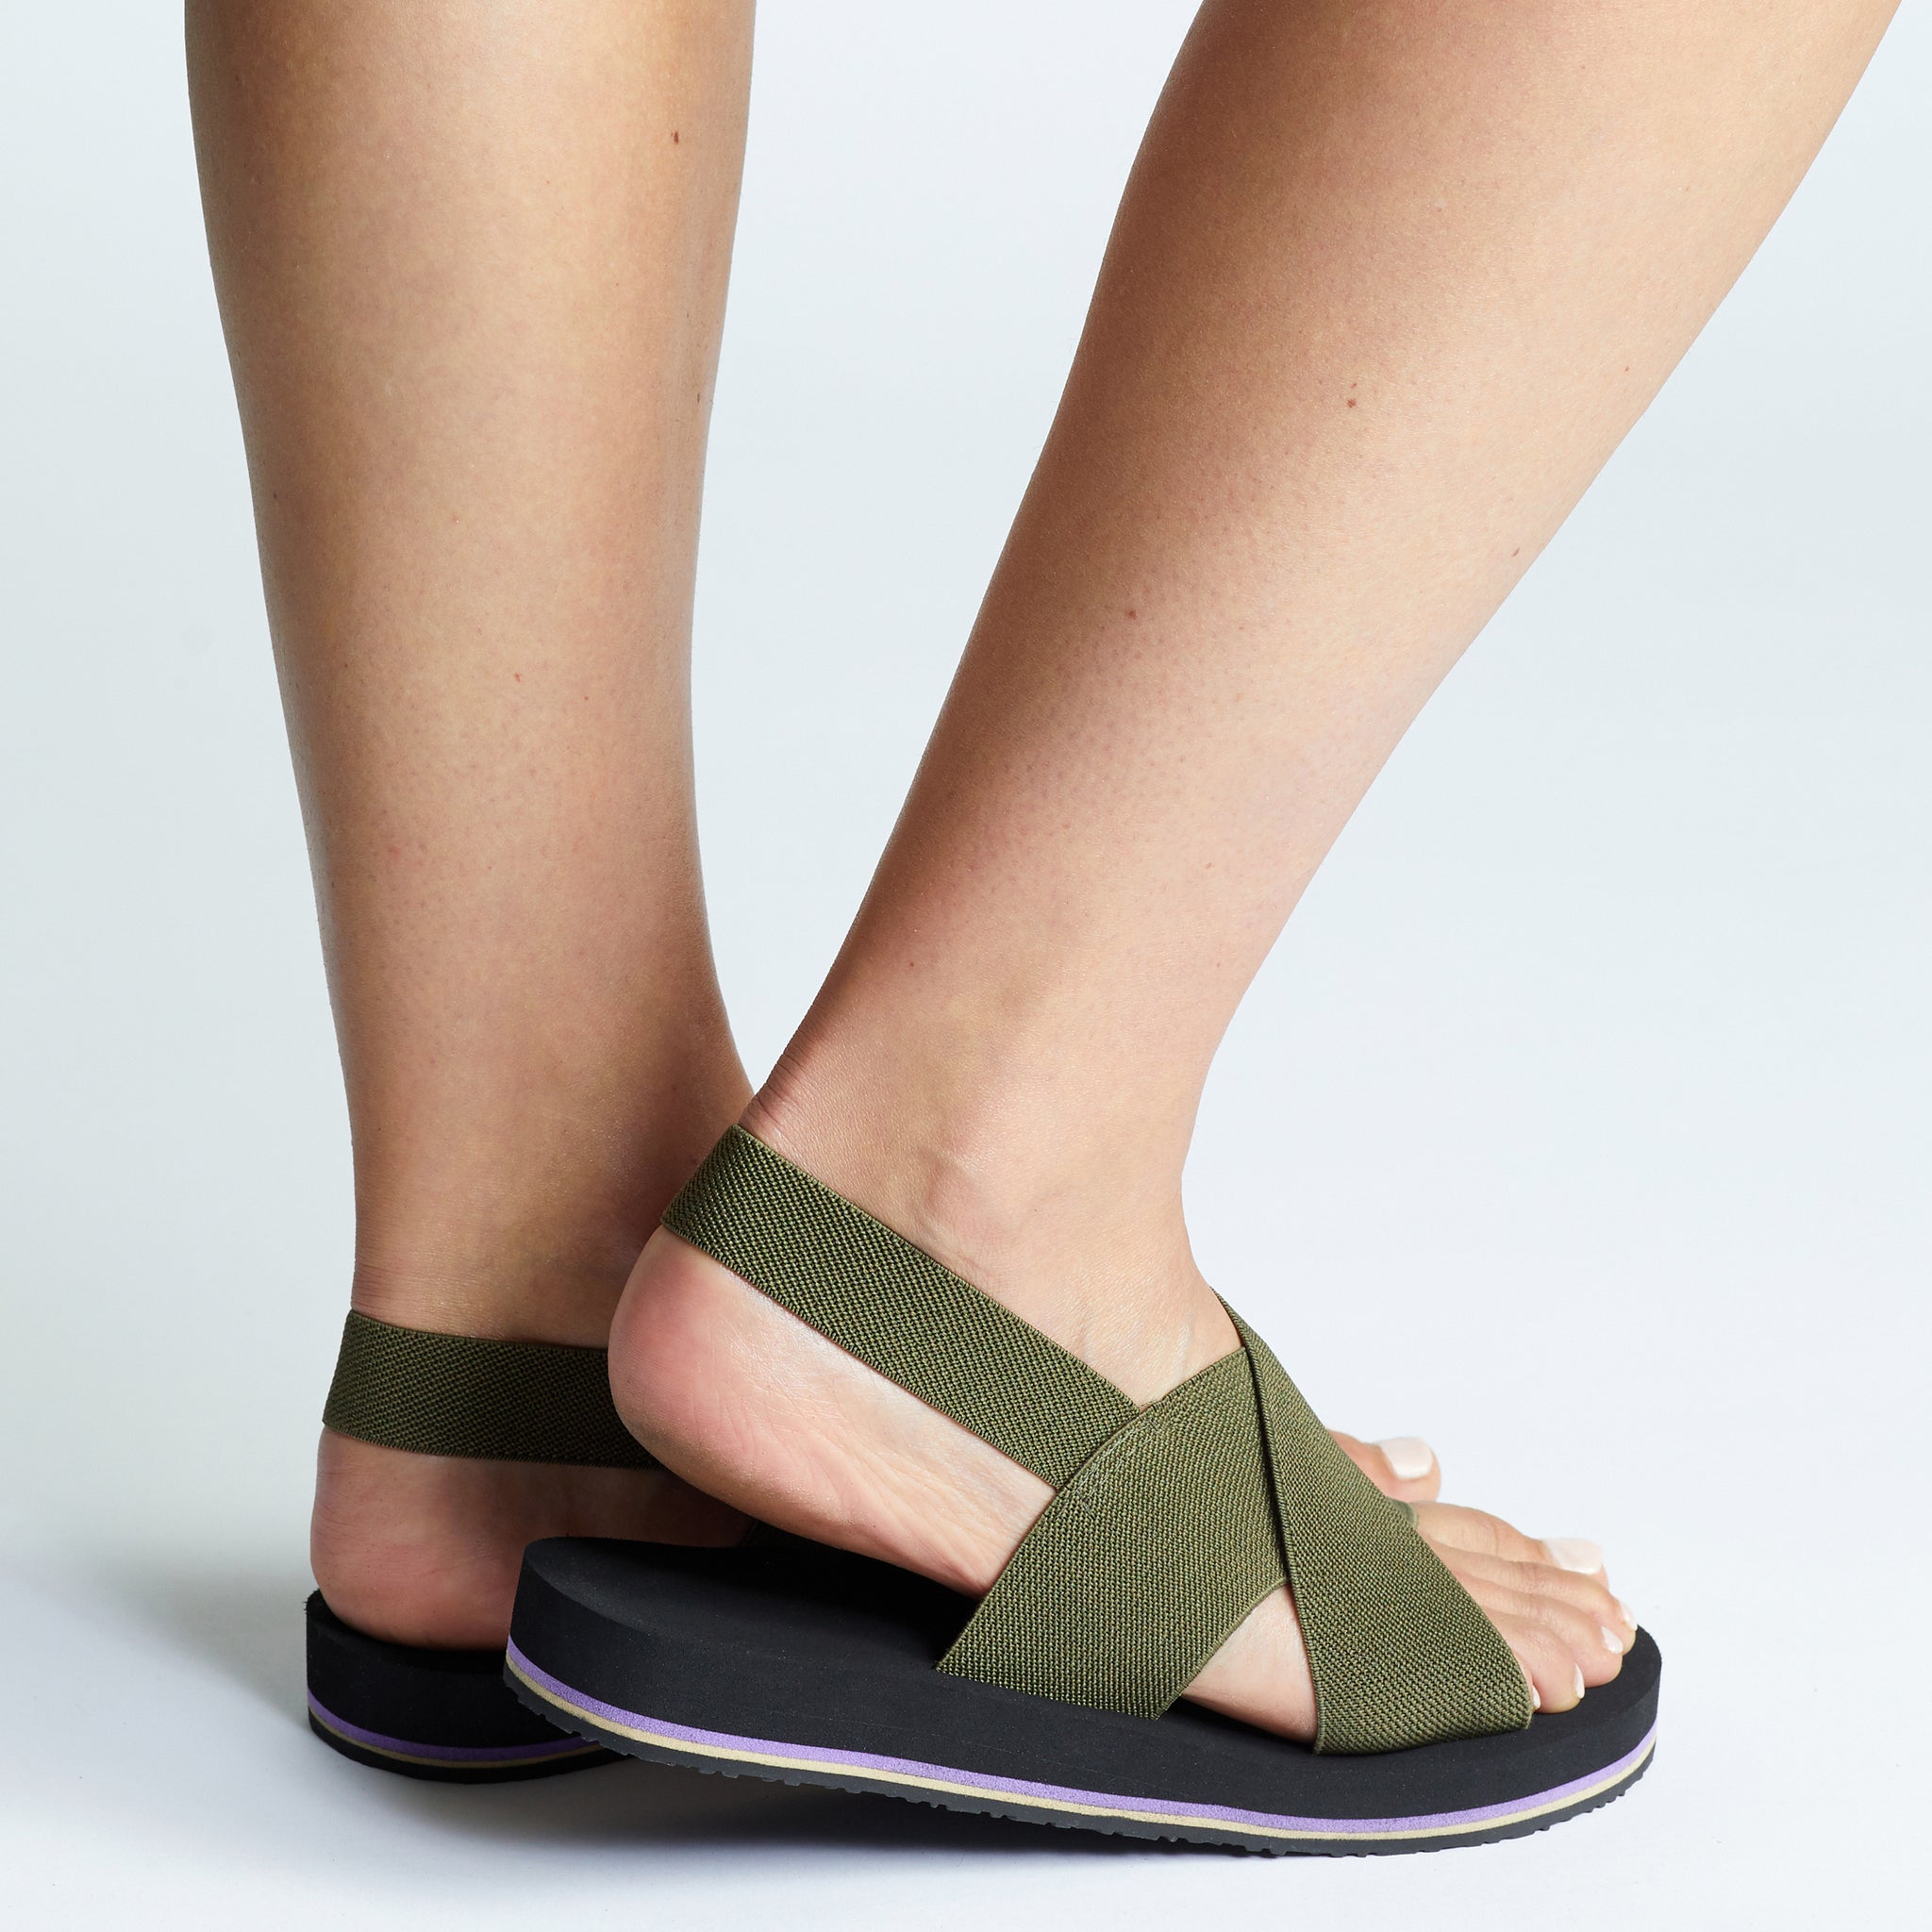 Pieds Original Green Sandal | Australian made sandals